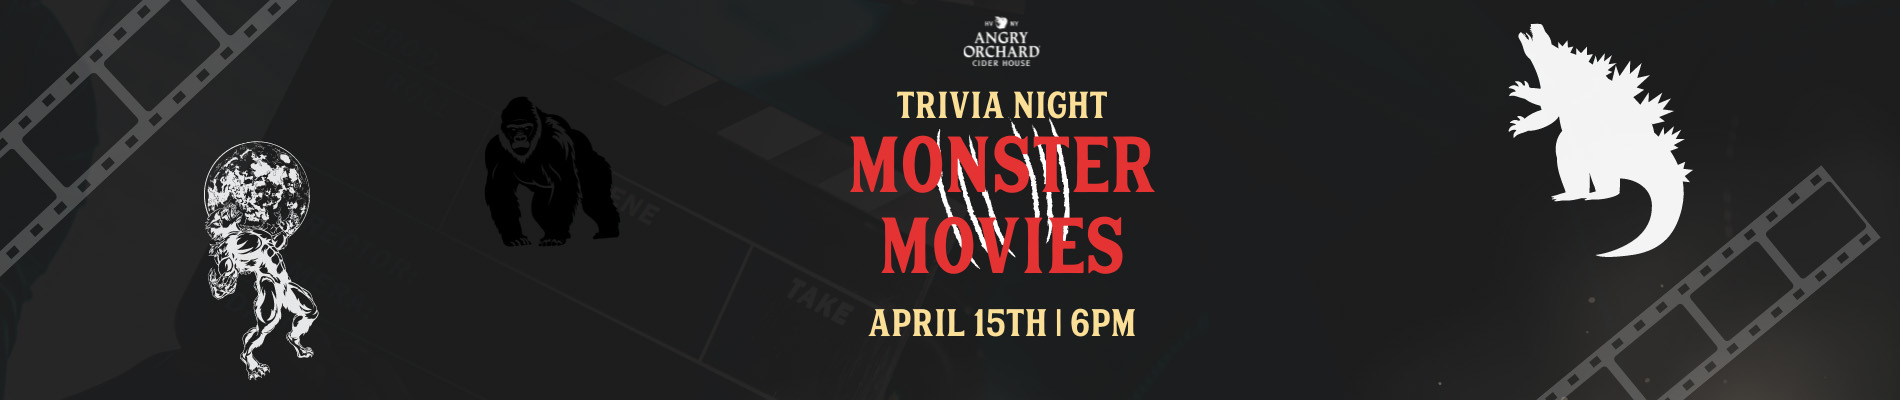 Trivia Night Monster Movies